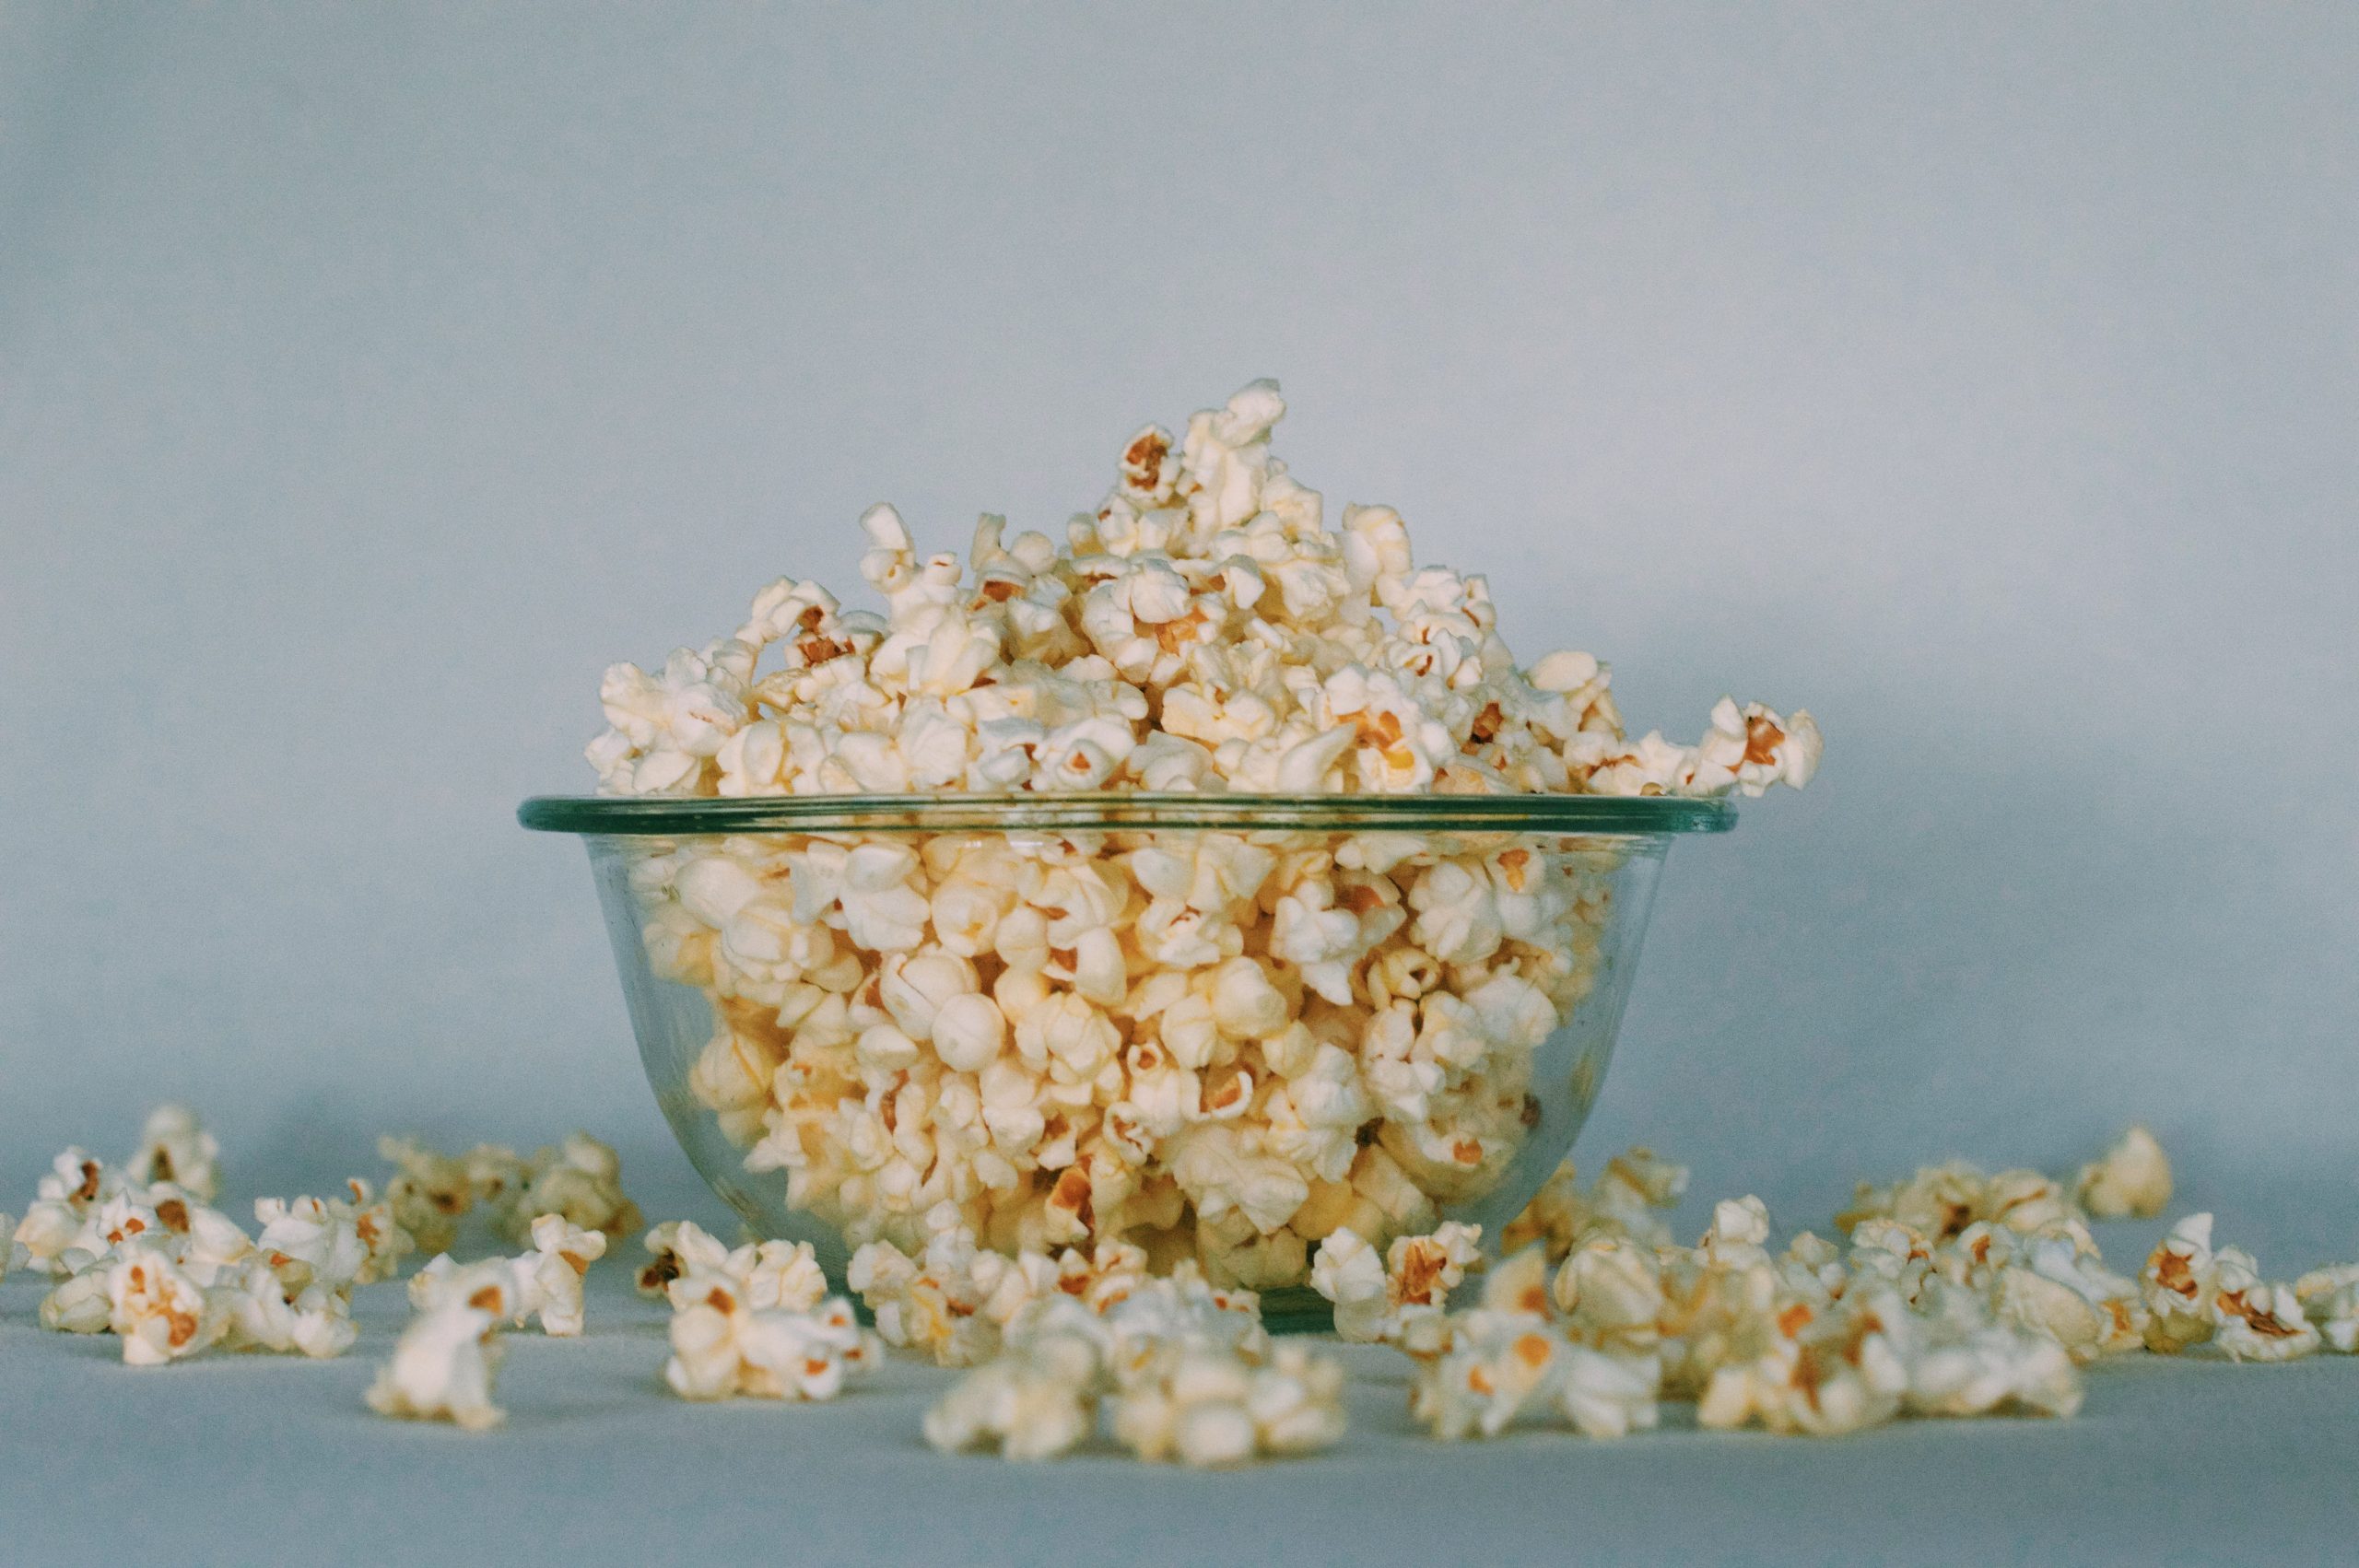 Dit wist je nog niet over popcorn. Wedden?